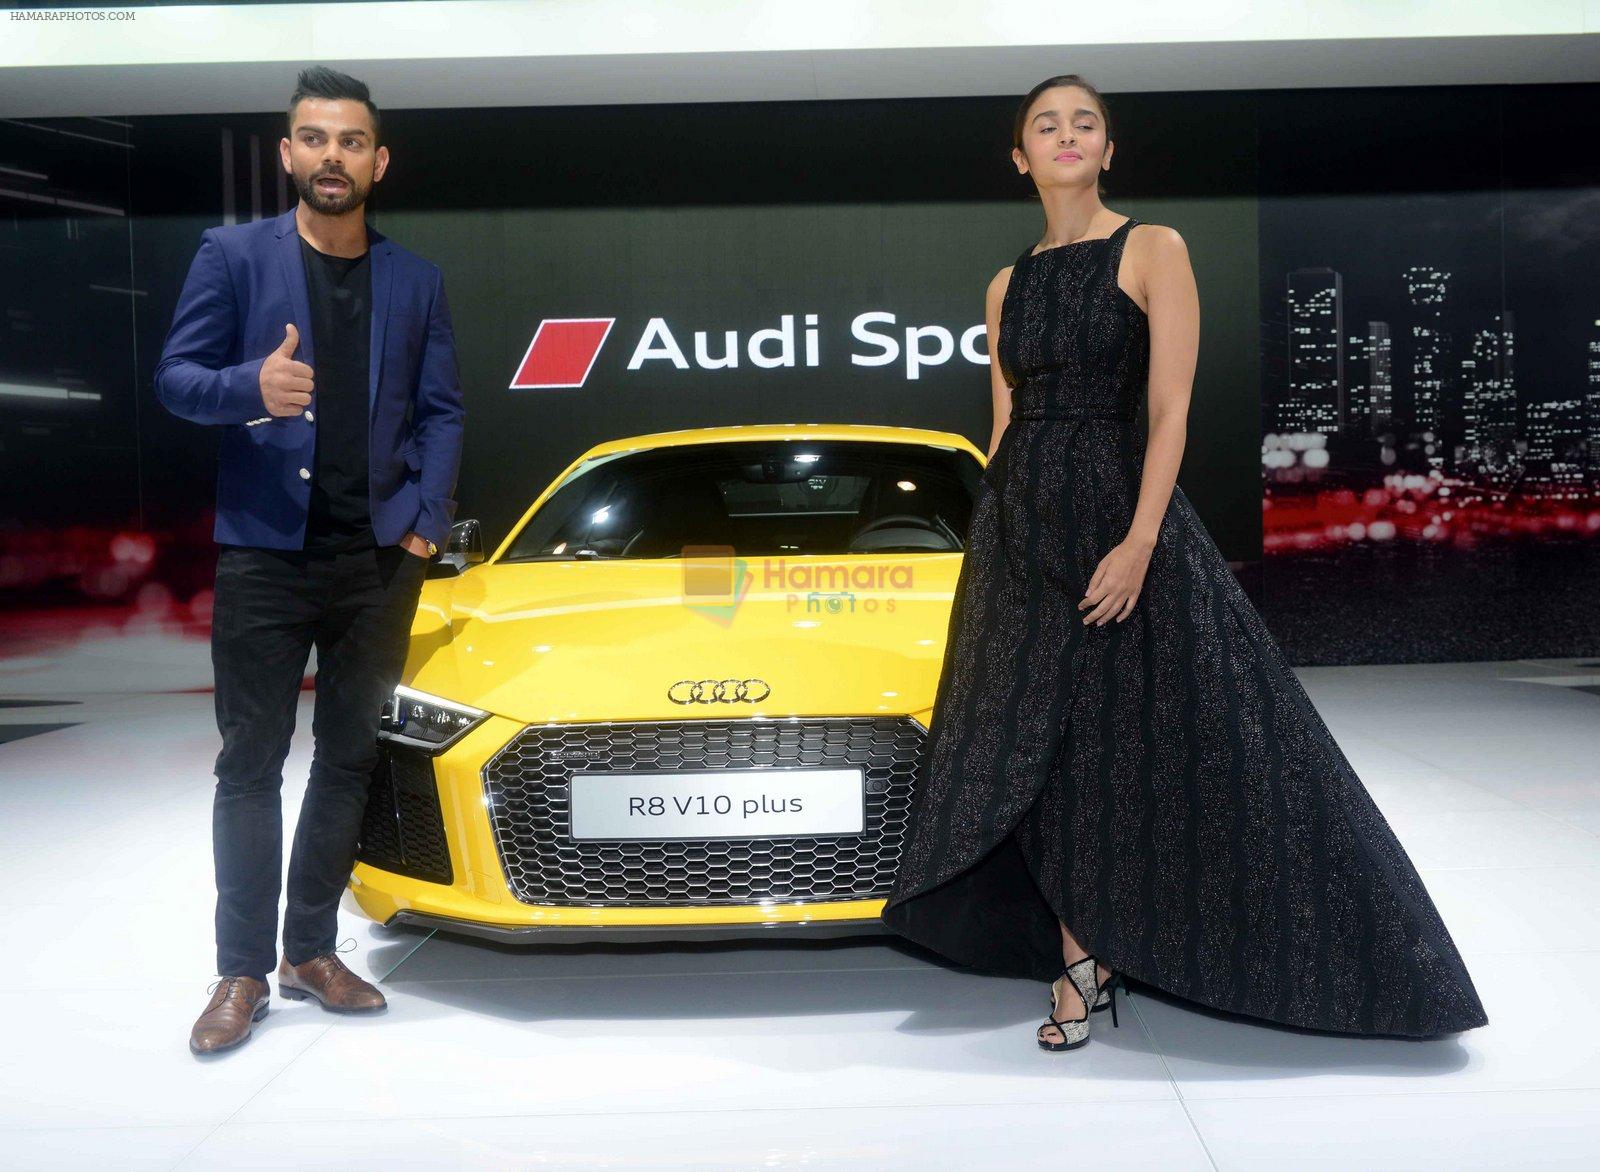 Alia BHatt, Virat Kohli unveil the new Audi R8 at Auto Expo 2016 on 3rd Feb 2016